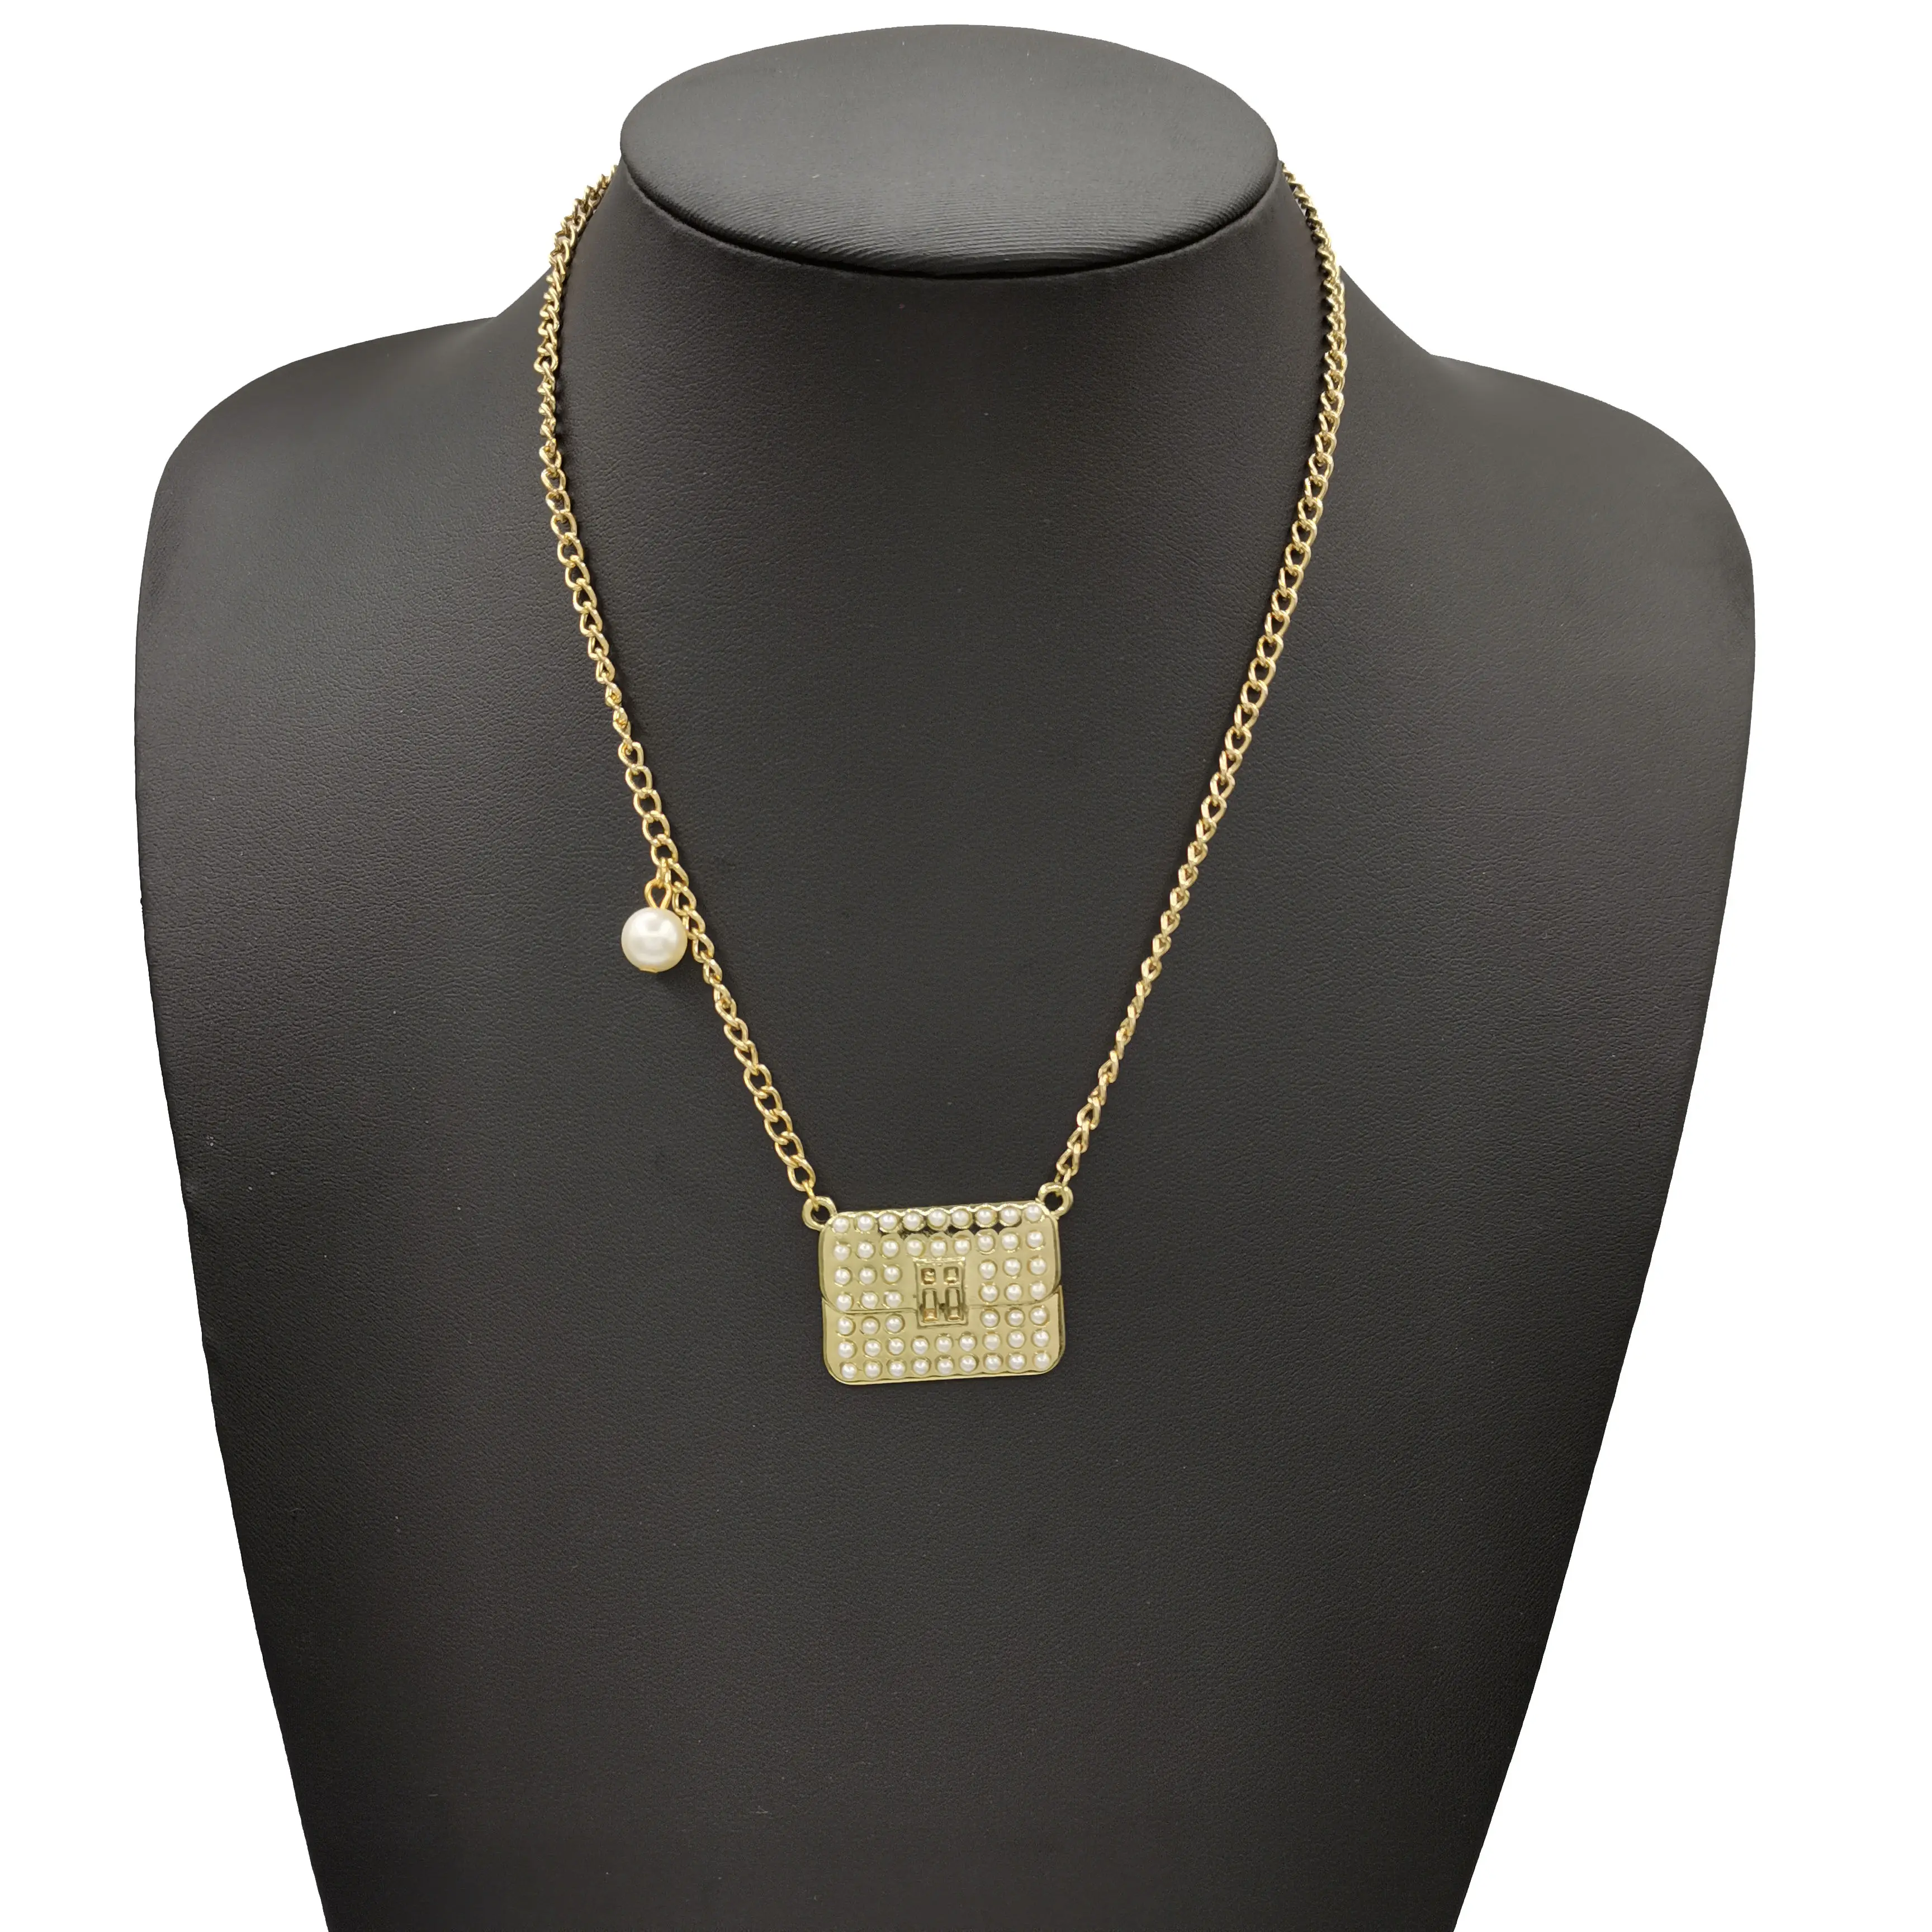 2021 neueste Mode tasche, Perlen anhänger, Schmuck, einfaches Design, passende Halskette für Frauen